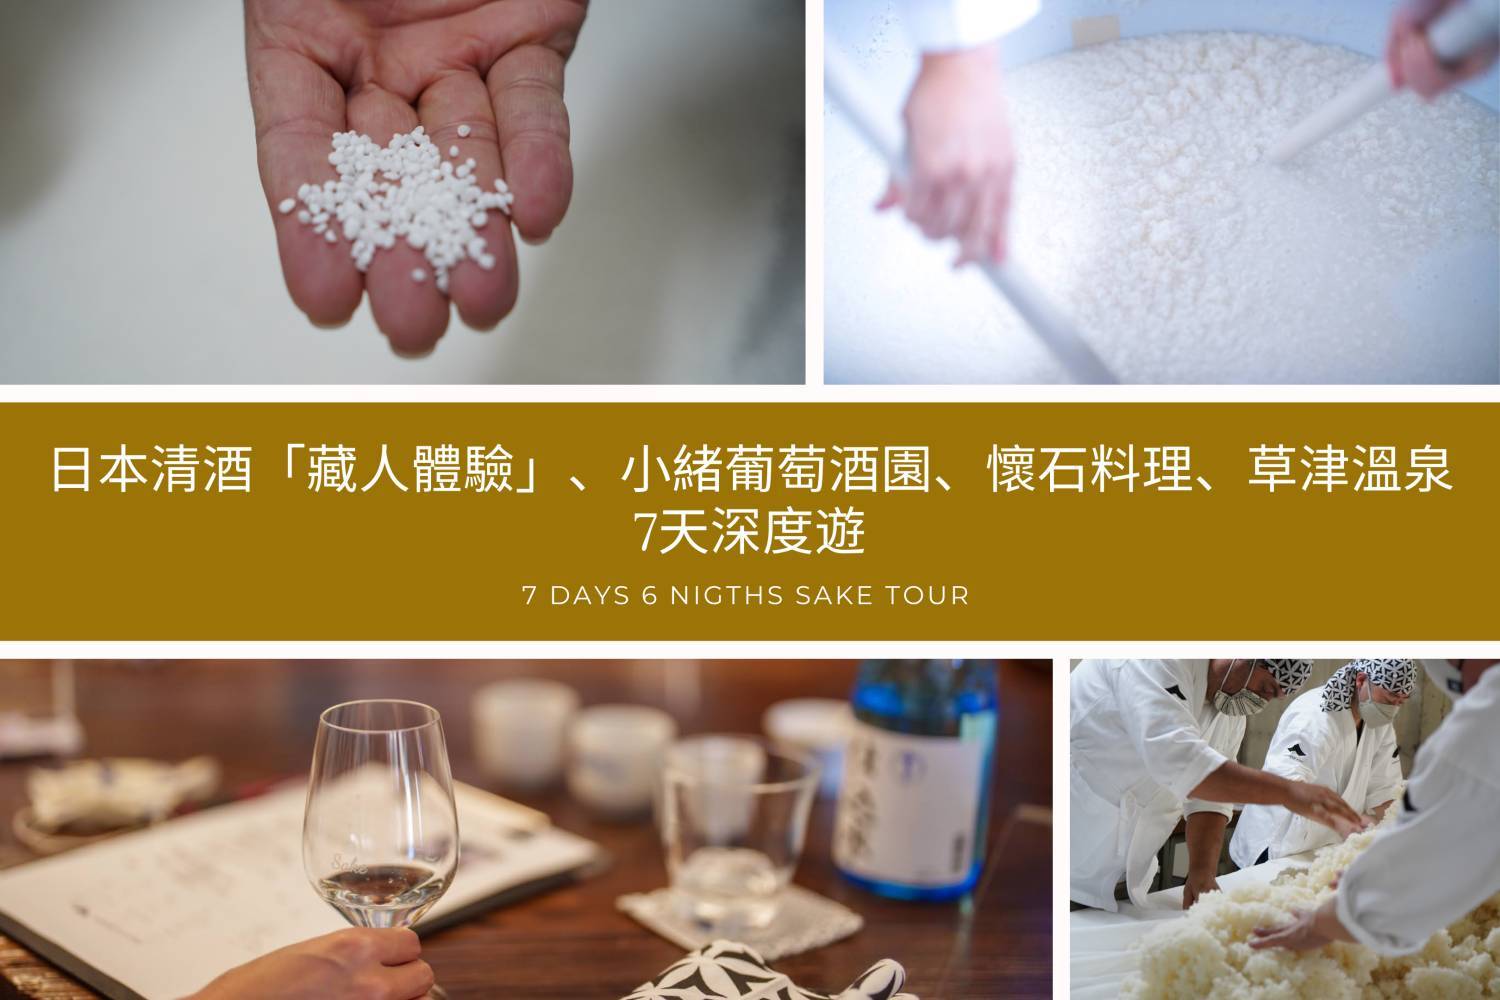 【帶你走入清酒文化】 日本清酒「藏人體驗」、小緒葡萄酒園、懷石料理、草津溫泉7天深度遊